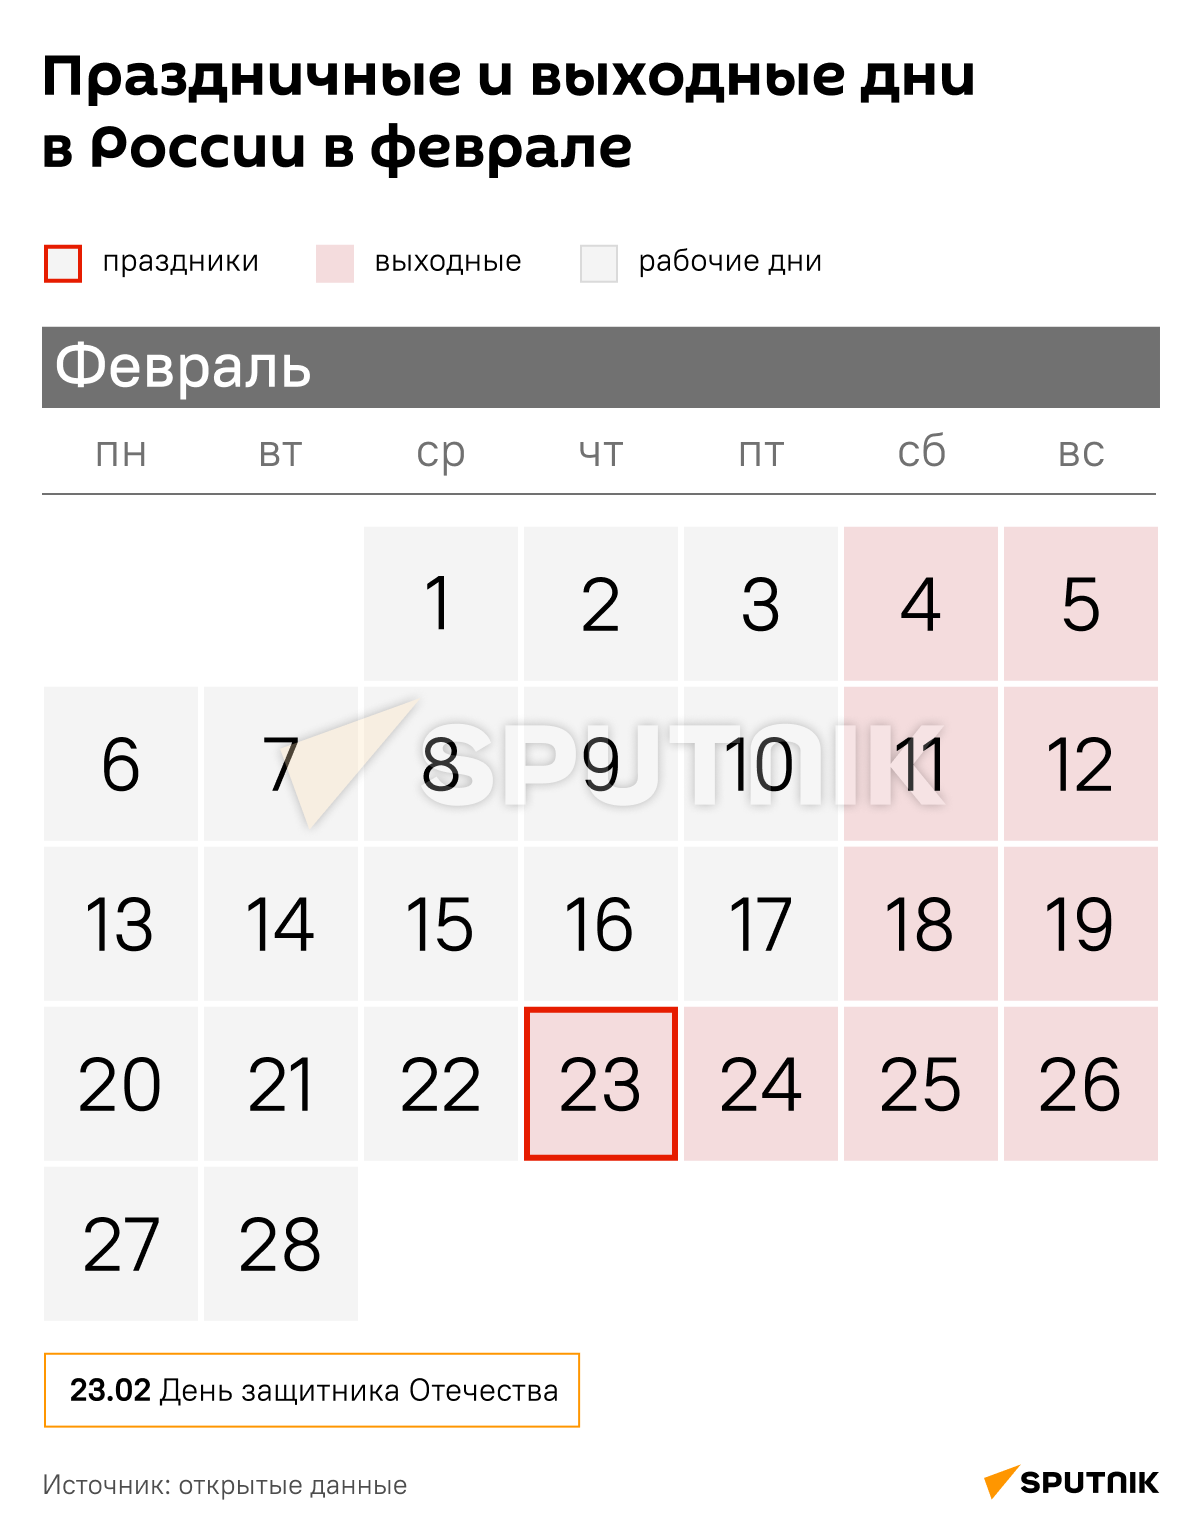 Праздничные и выходные дни  в России в феврале - Sputnik Таджикистан